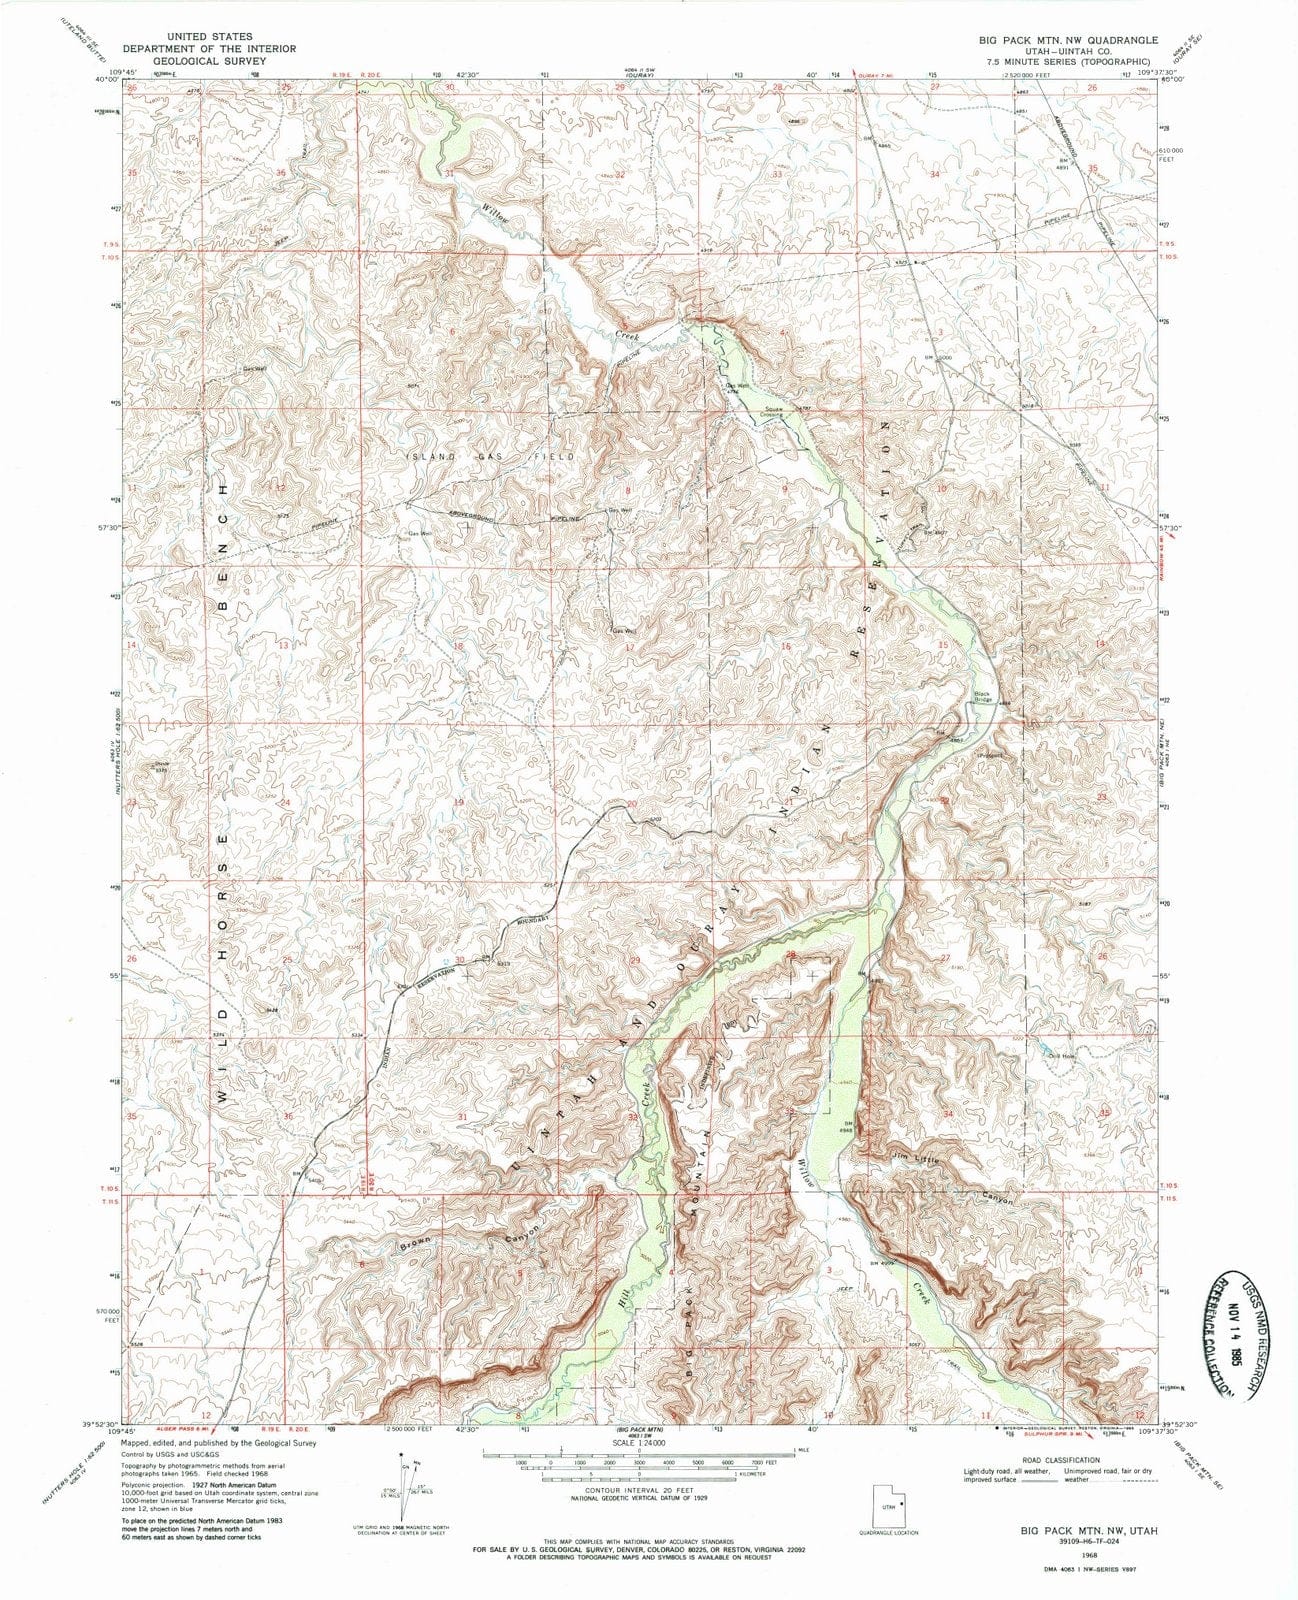 1968 Big Pack MTN, UT - Utah - USGS Topographic Map v2